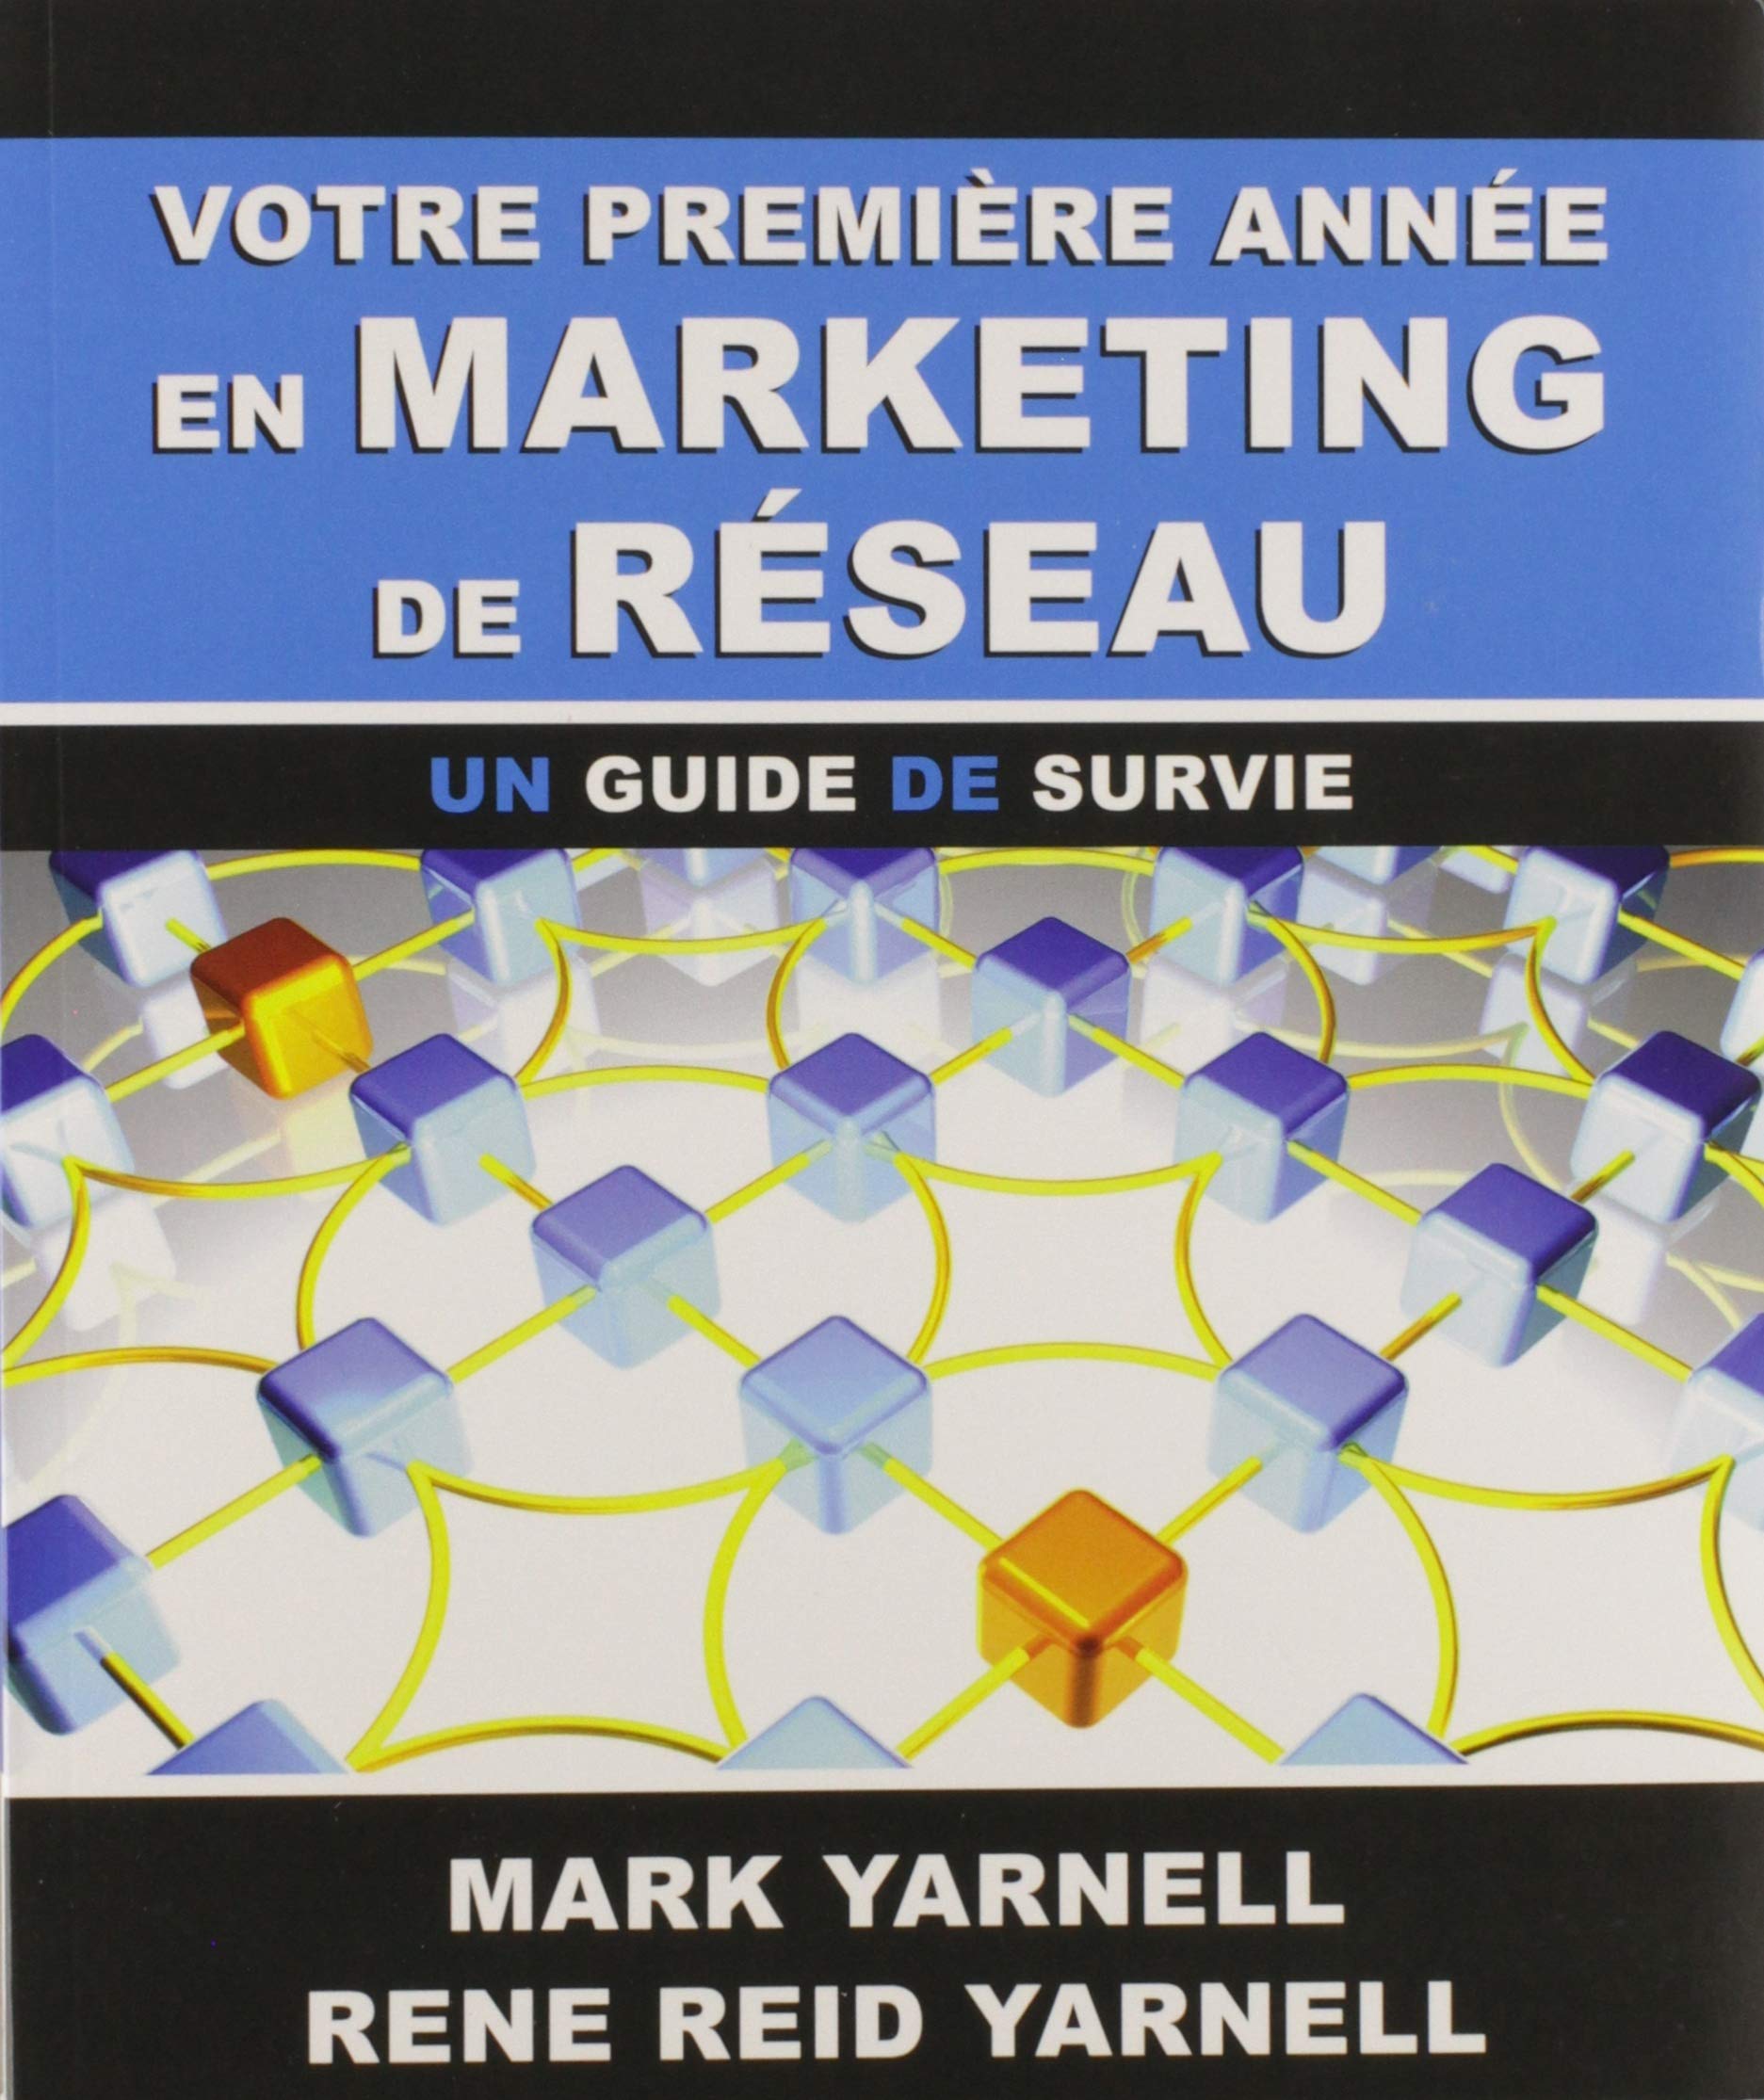 Livre ISBN 2980602183 Votre première année en marketing de réseau : Un guide de survie (Mark Yarnell)